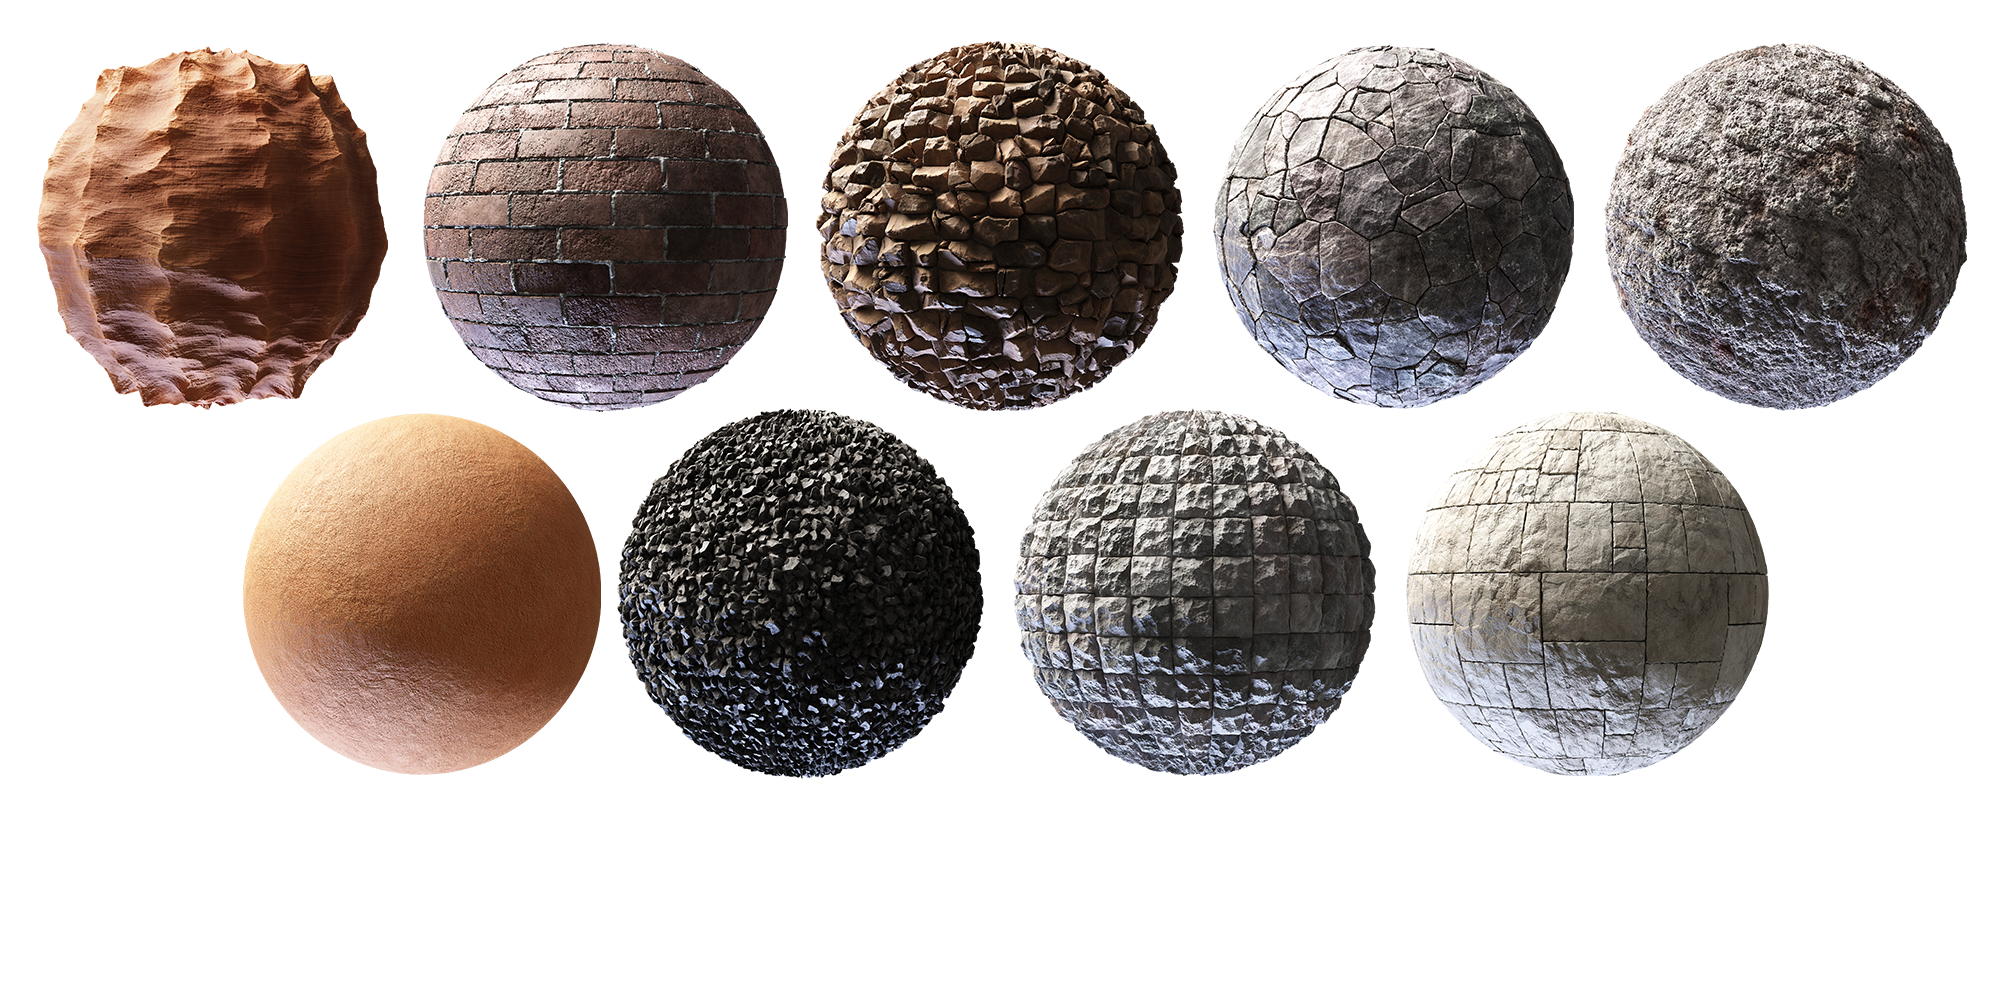 Texture Pack: Stone and Bricks 01